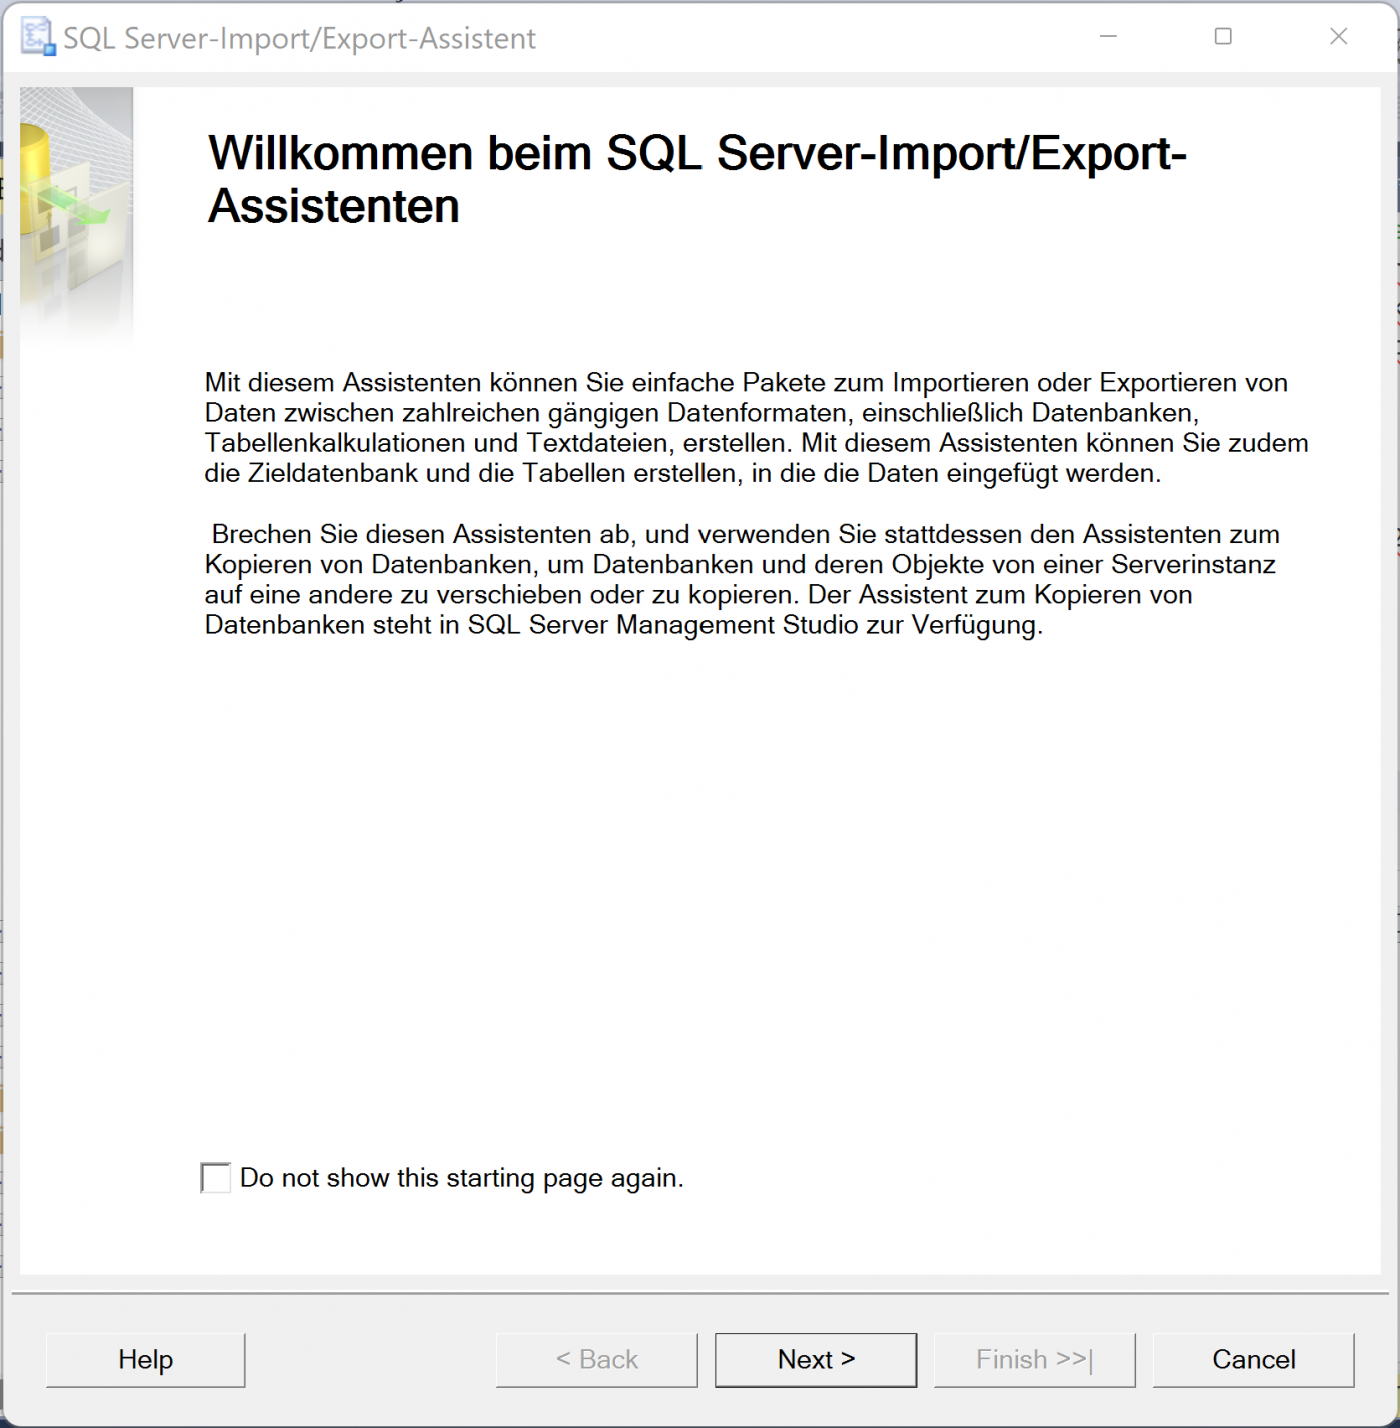 Mainzer Datenfabrik - Datenaustausch zwischen SQL Server und Access